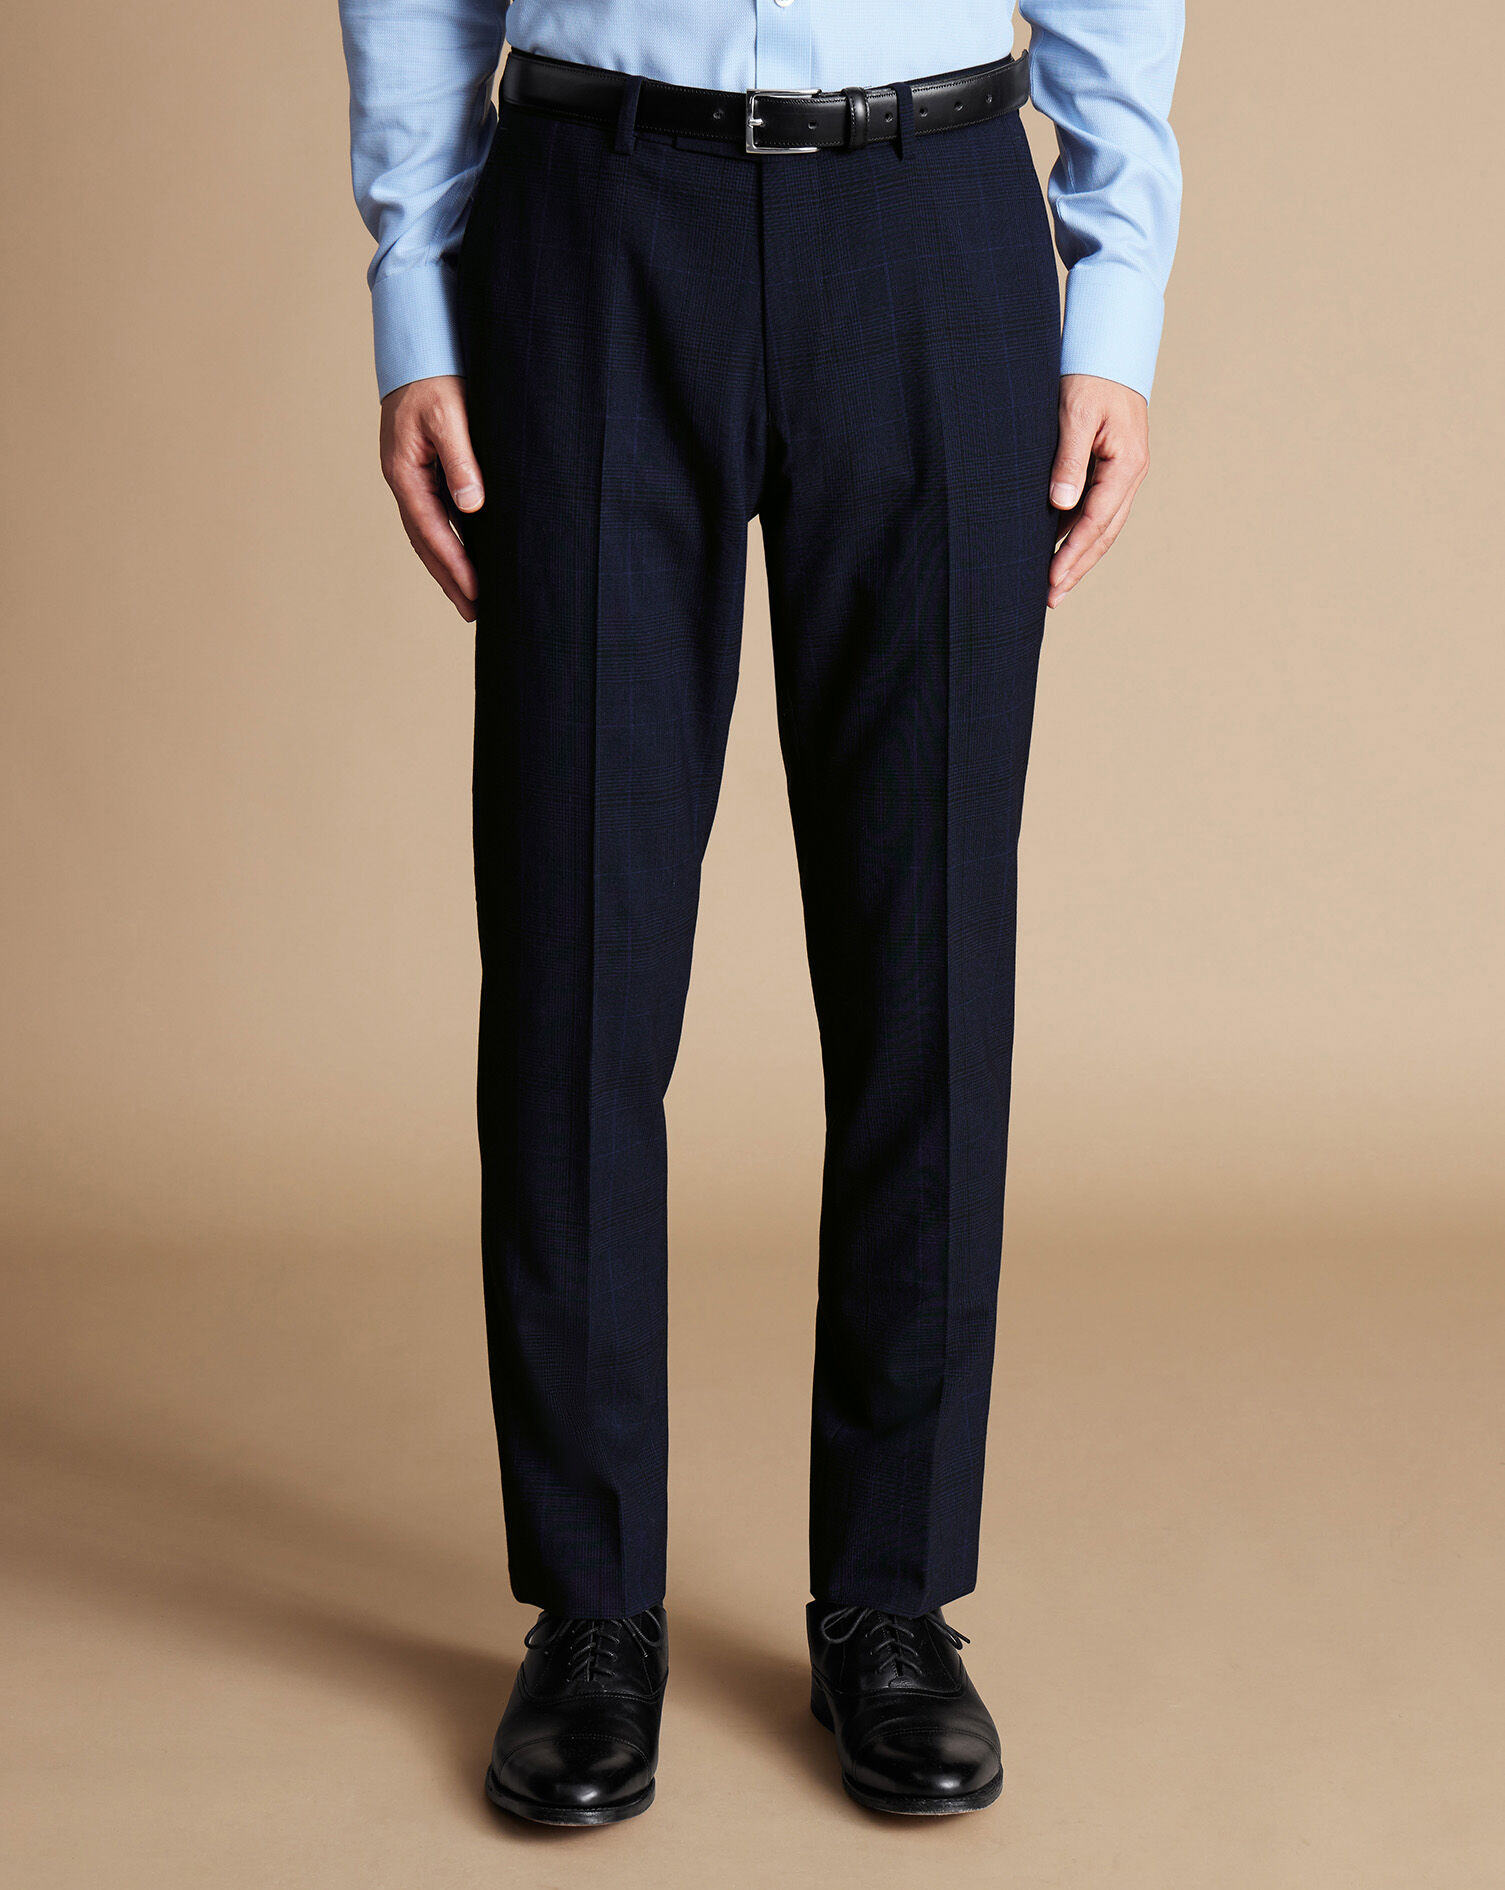 Lauren By Ralph Lauren Classic Fit Dress Pants | All Sale| Men's Wearhouse